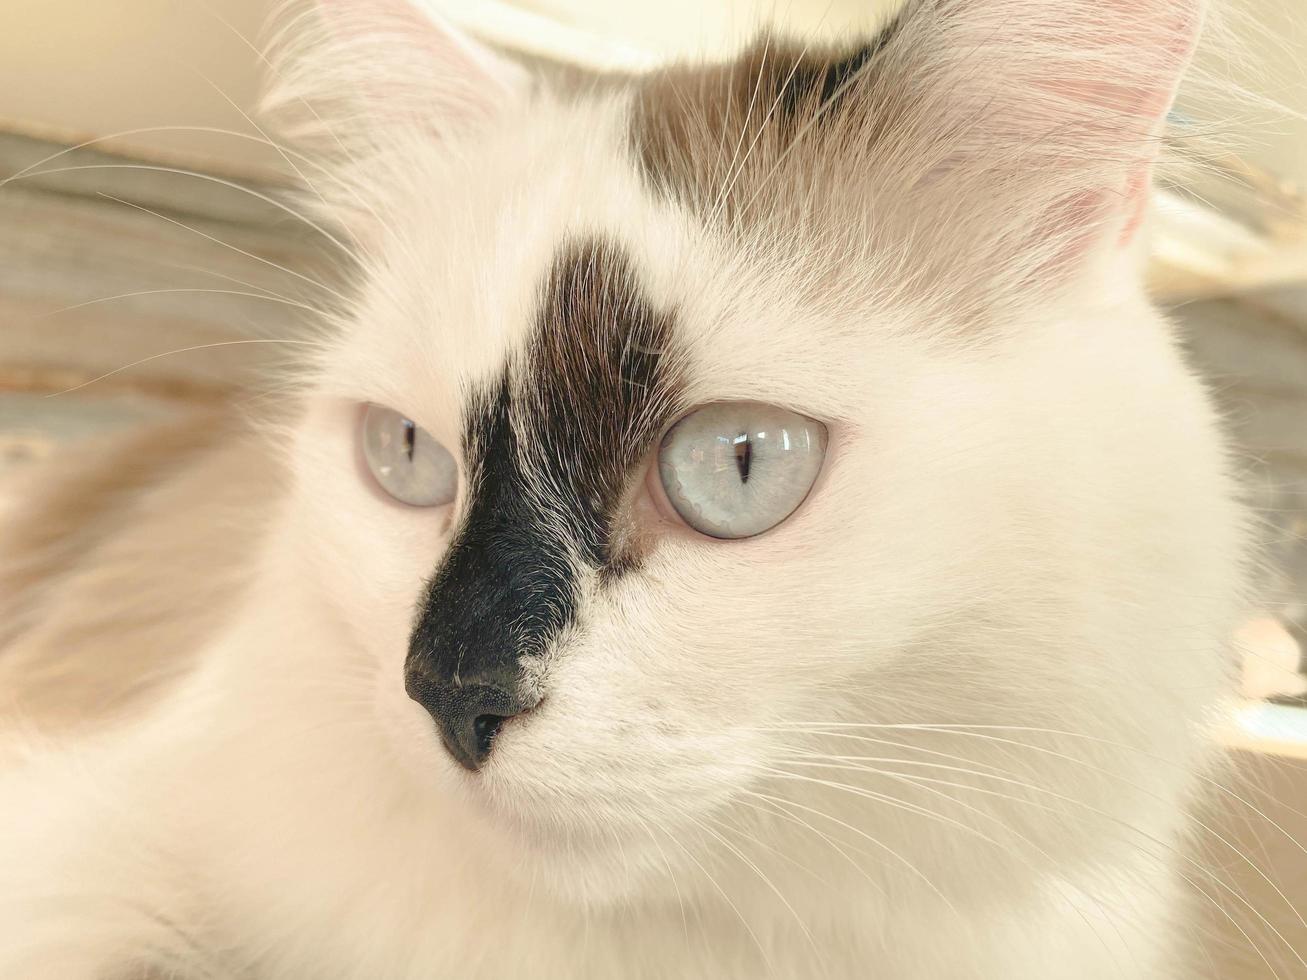 la cabeza y el hocico de un hermoso gato blanco con manchas negras y esponjoso con ojos azules y largos bigotes y orejas, acostado en la cama foto